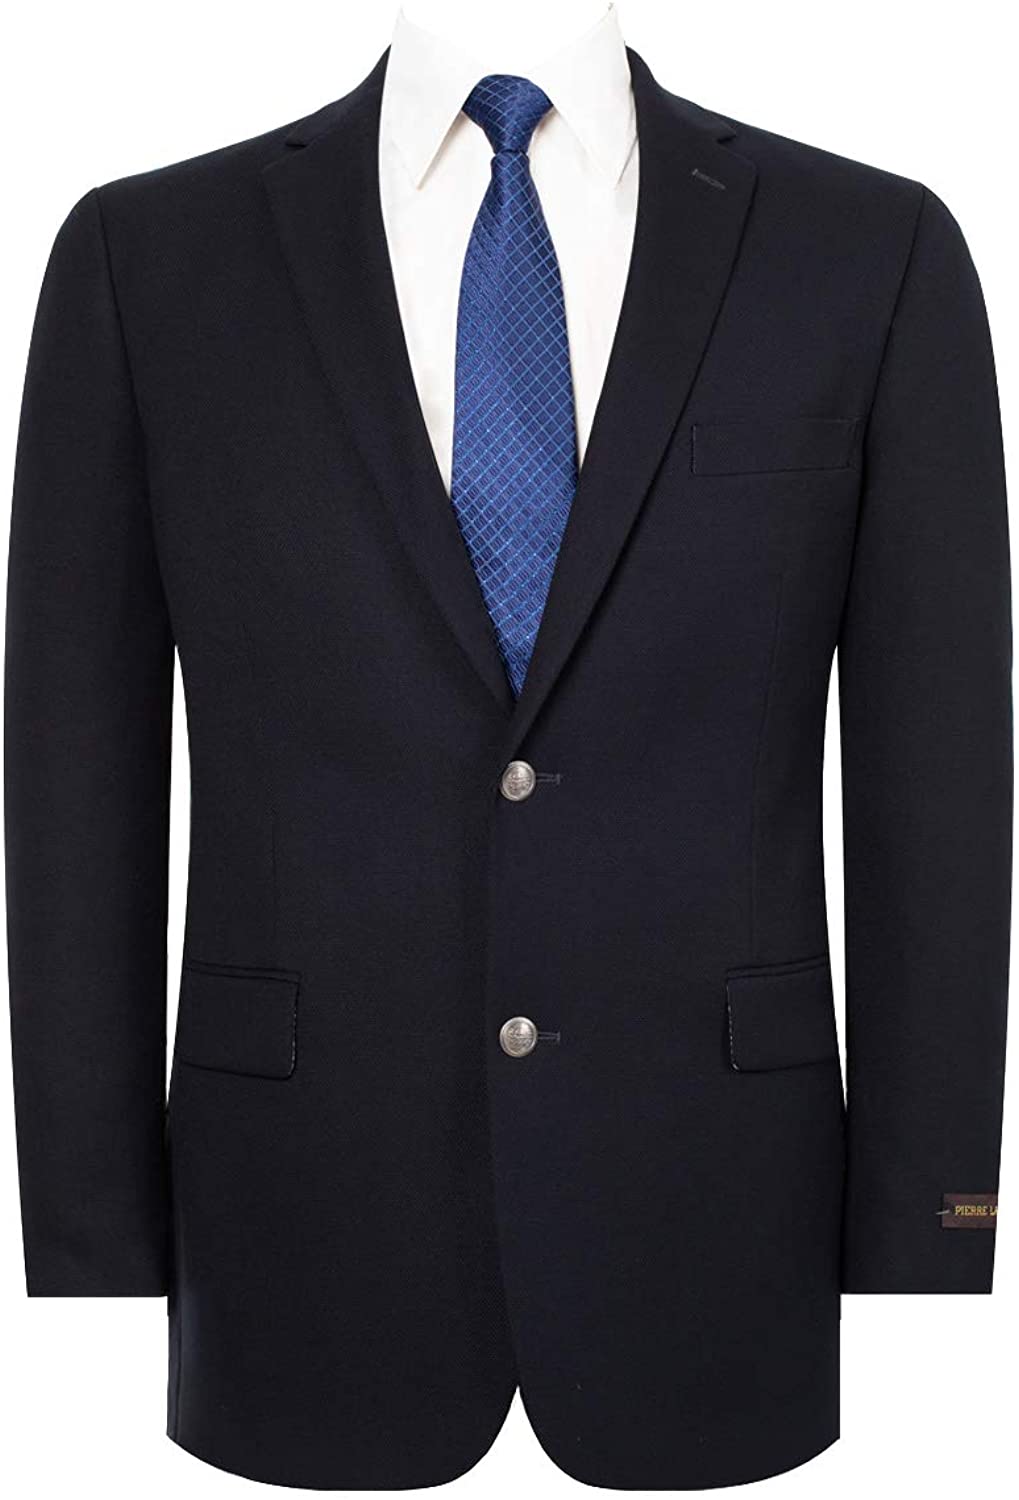 QSYJ Men's Stretch Classic Fit Blazer Sport Coat Suit Jacket 